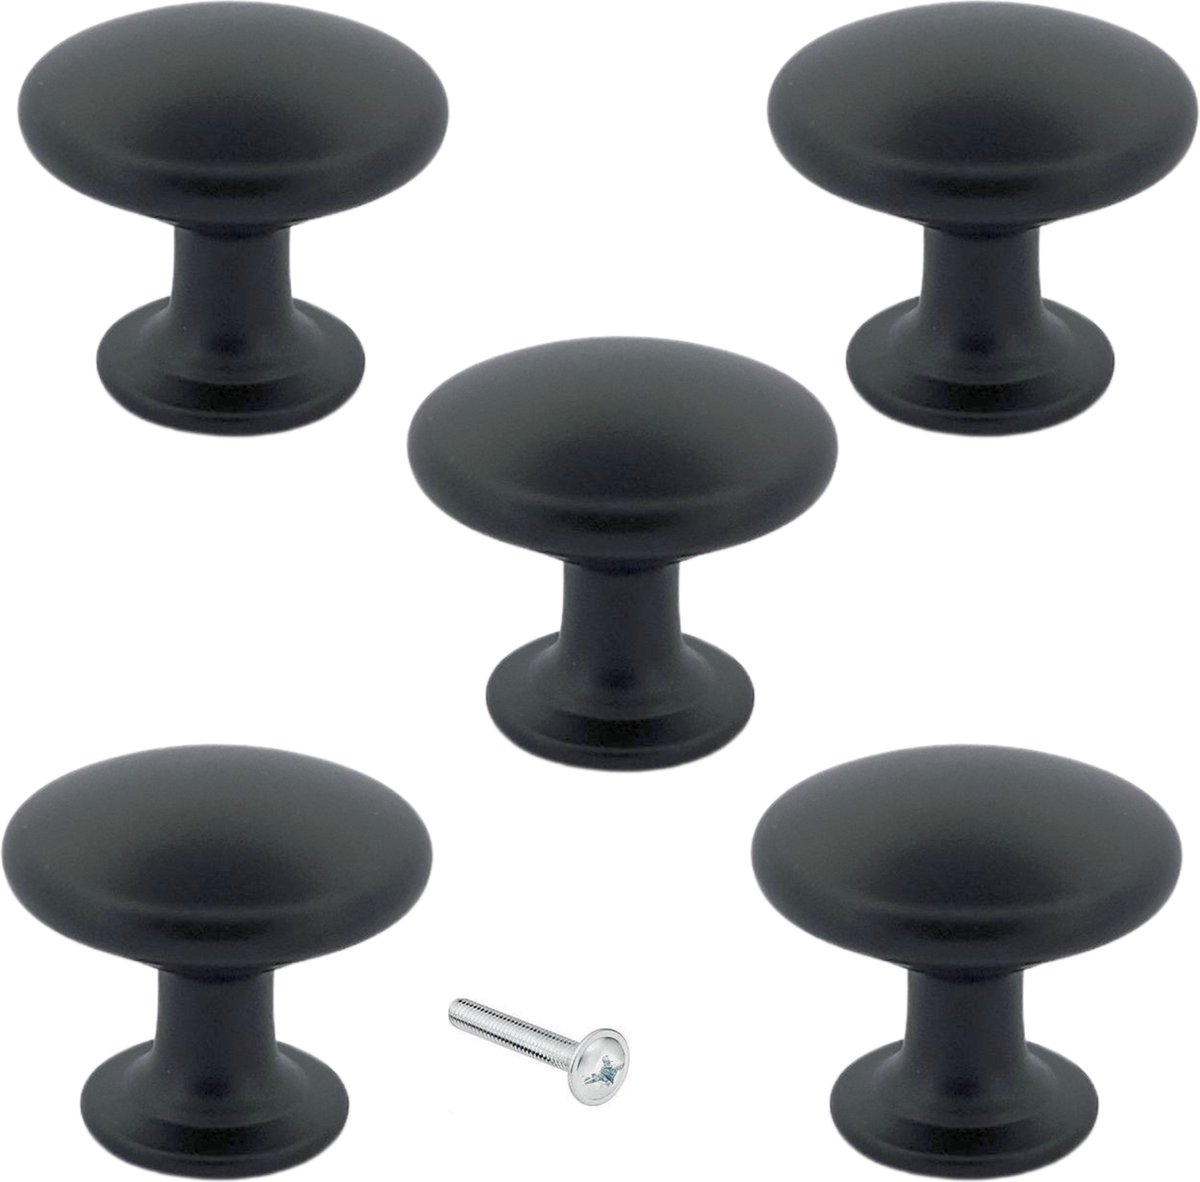 Kastknoppen Macon zwart rond 5 Stuks - Diameter 27 mm - Kastknop - Meubelknop - Deurknoppen voor kasten - Meubelbeslag - Deurknopjes - Meubelknoppen - By MJM